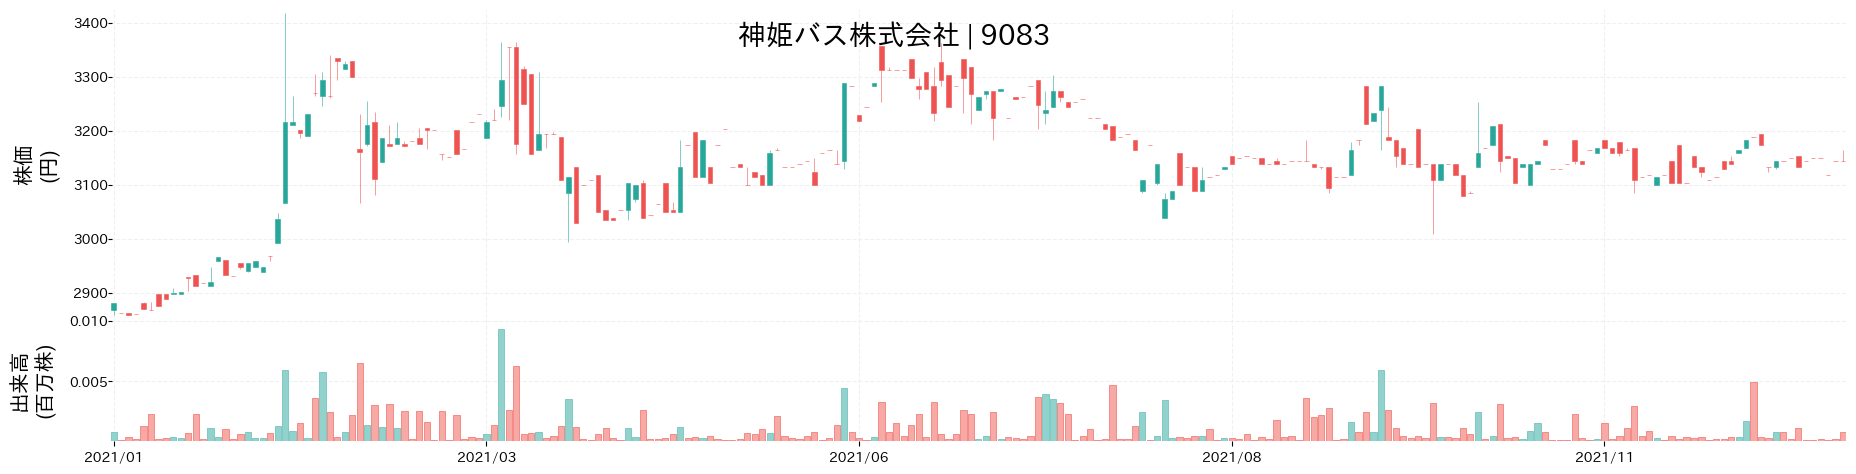 神姫バスの株価推移(2021)